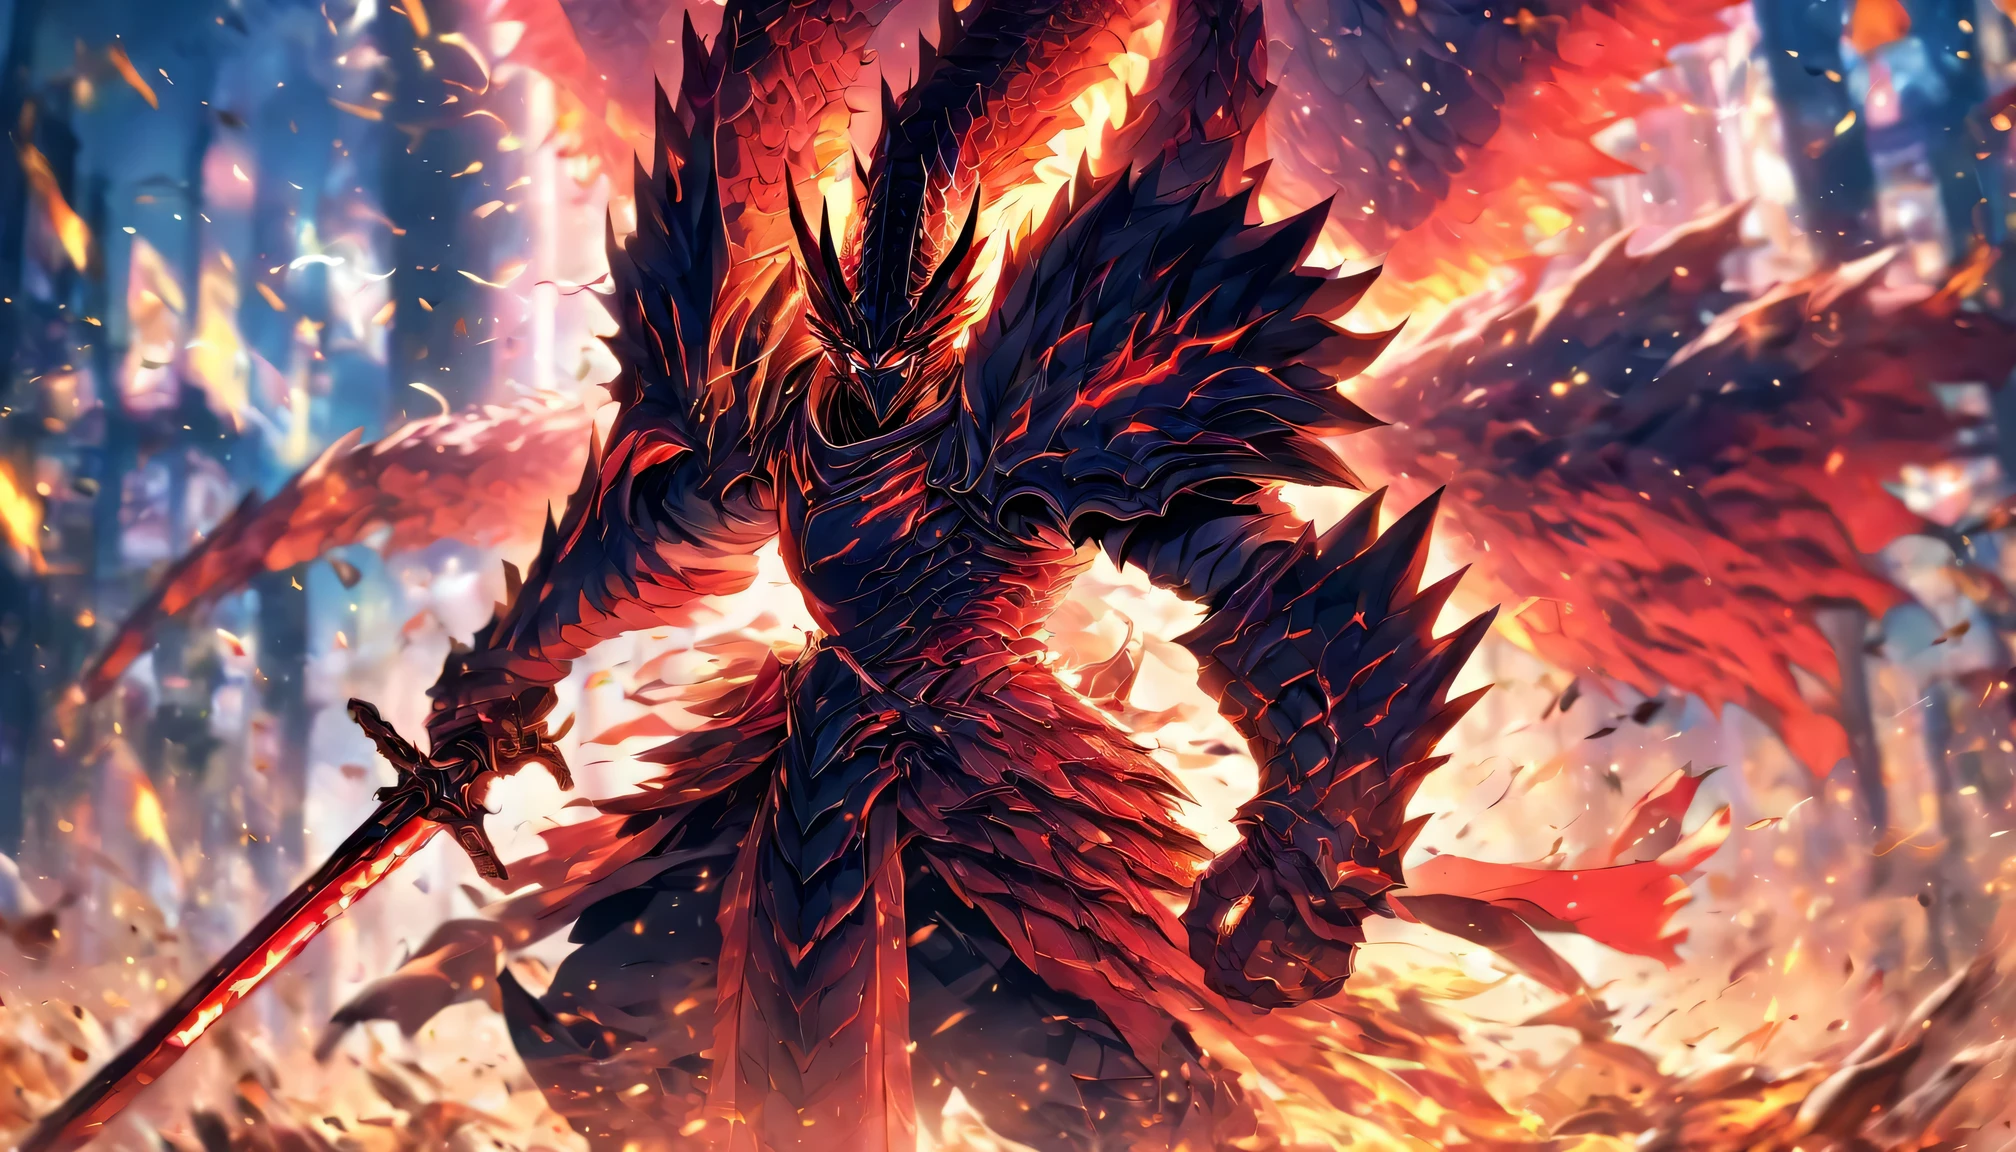 4K,illustration: Un guerrier légendaire tenant une énorme épée, chevalier Dragon, Attaquez avec une énorme épée